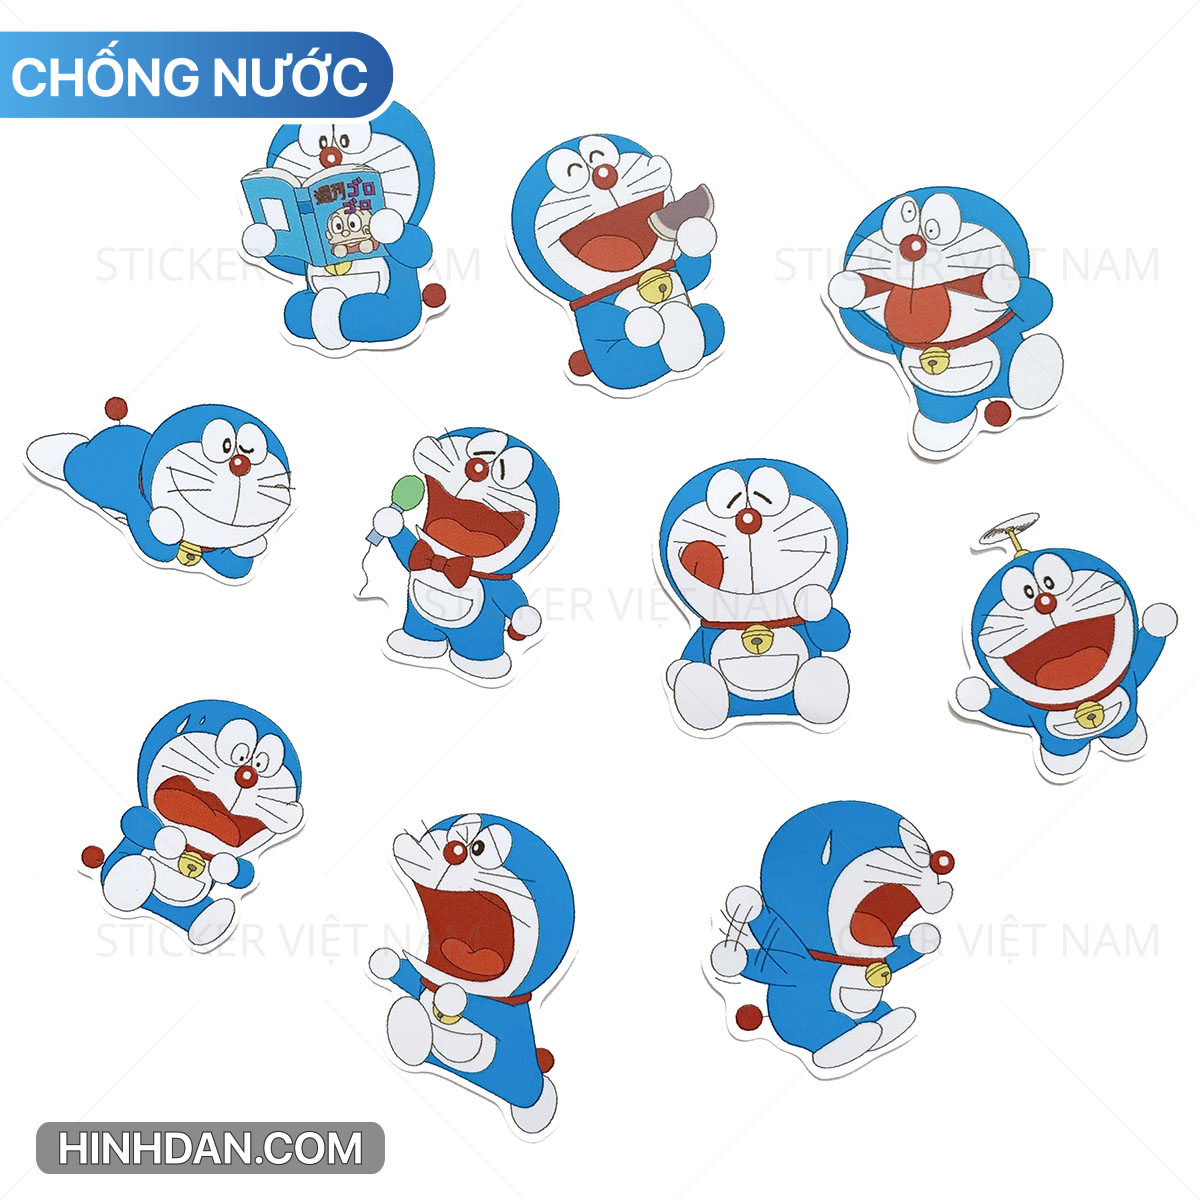 Bạn muốn trang trí chiếc điện thoại, sổ tay hay còn gì khác bằng hình ảnh Doraemon đáng yêu? Hãy xem ảnh để lựa chọn cho mình những sticker Doraemon ưa thích và làm mới không gian sống của mình ngay nào!